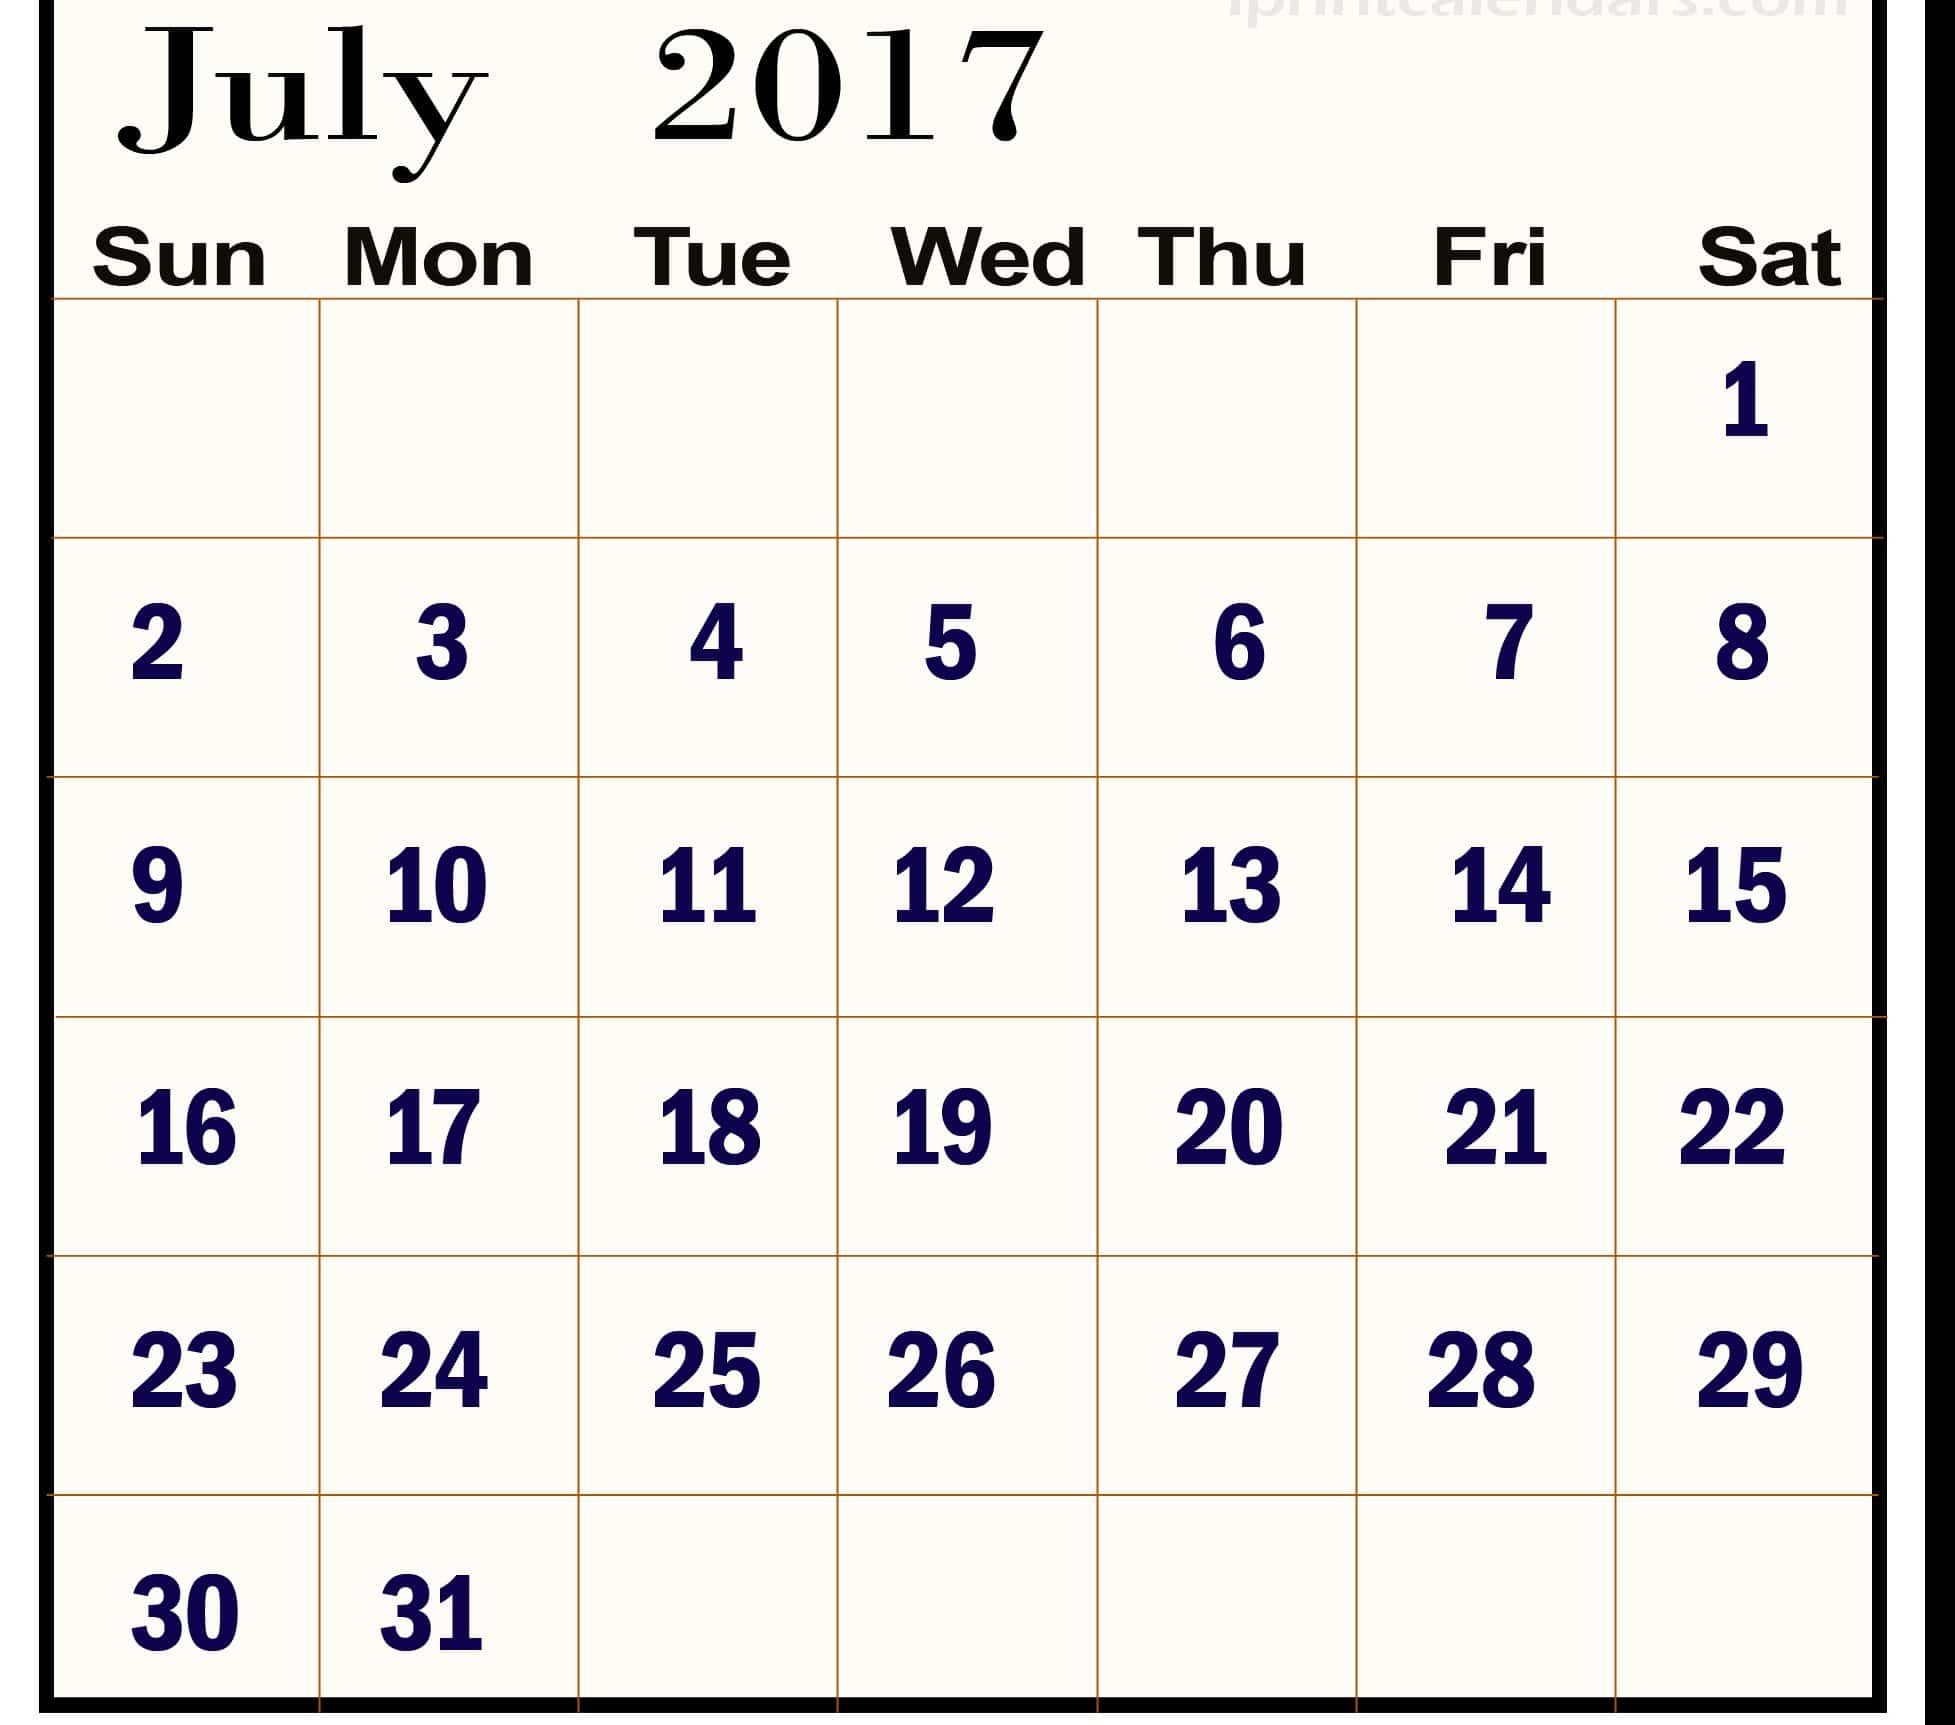 July 2017 Calendar Images